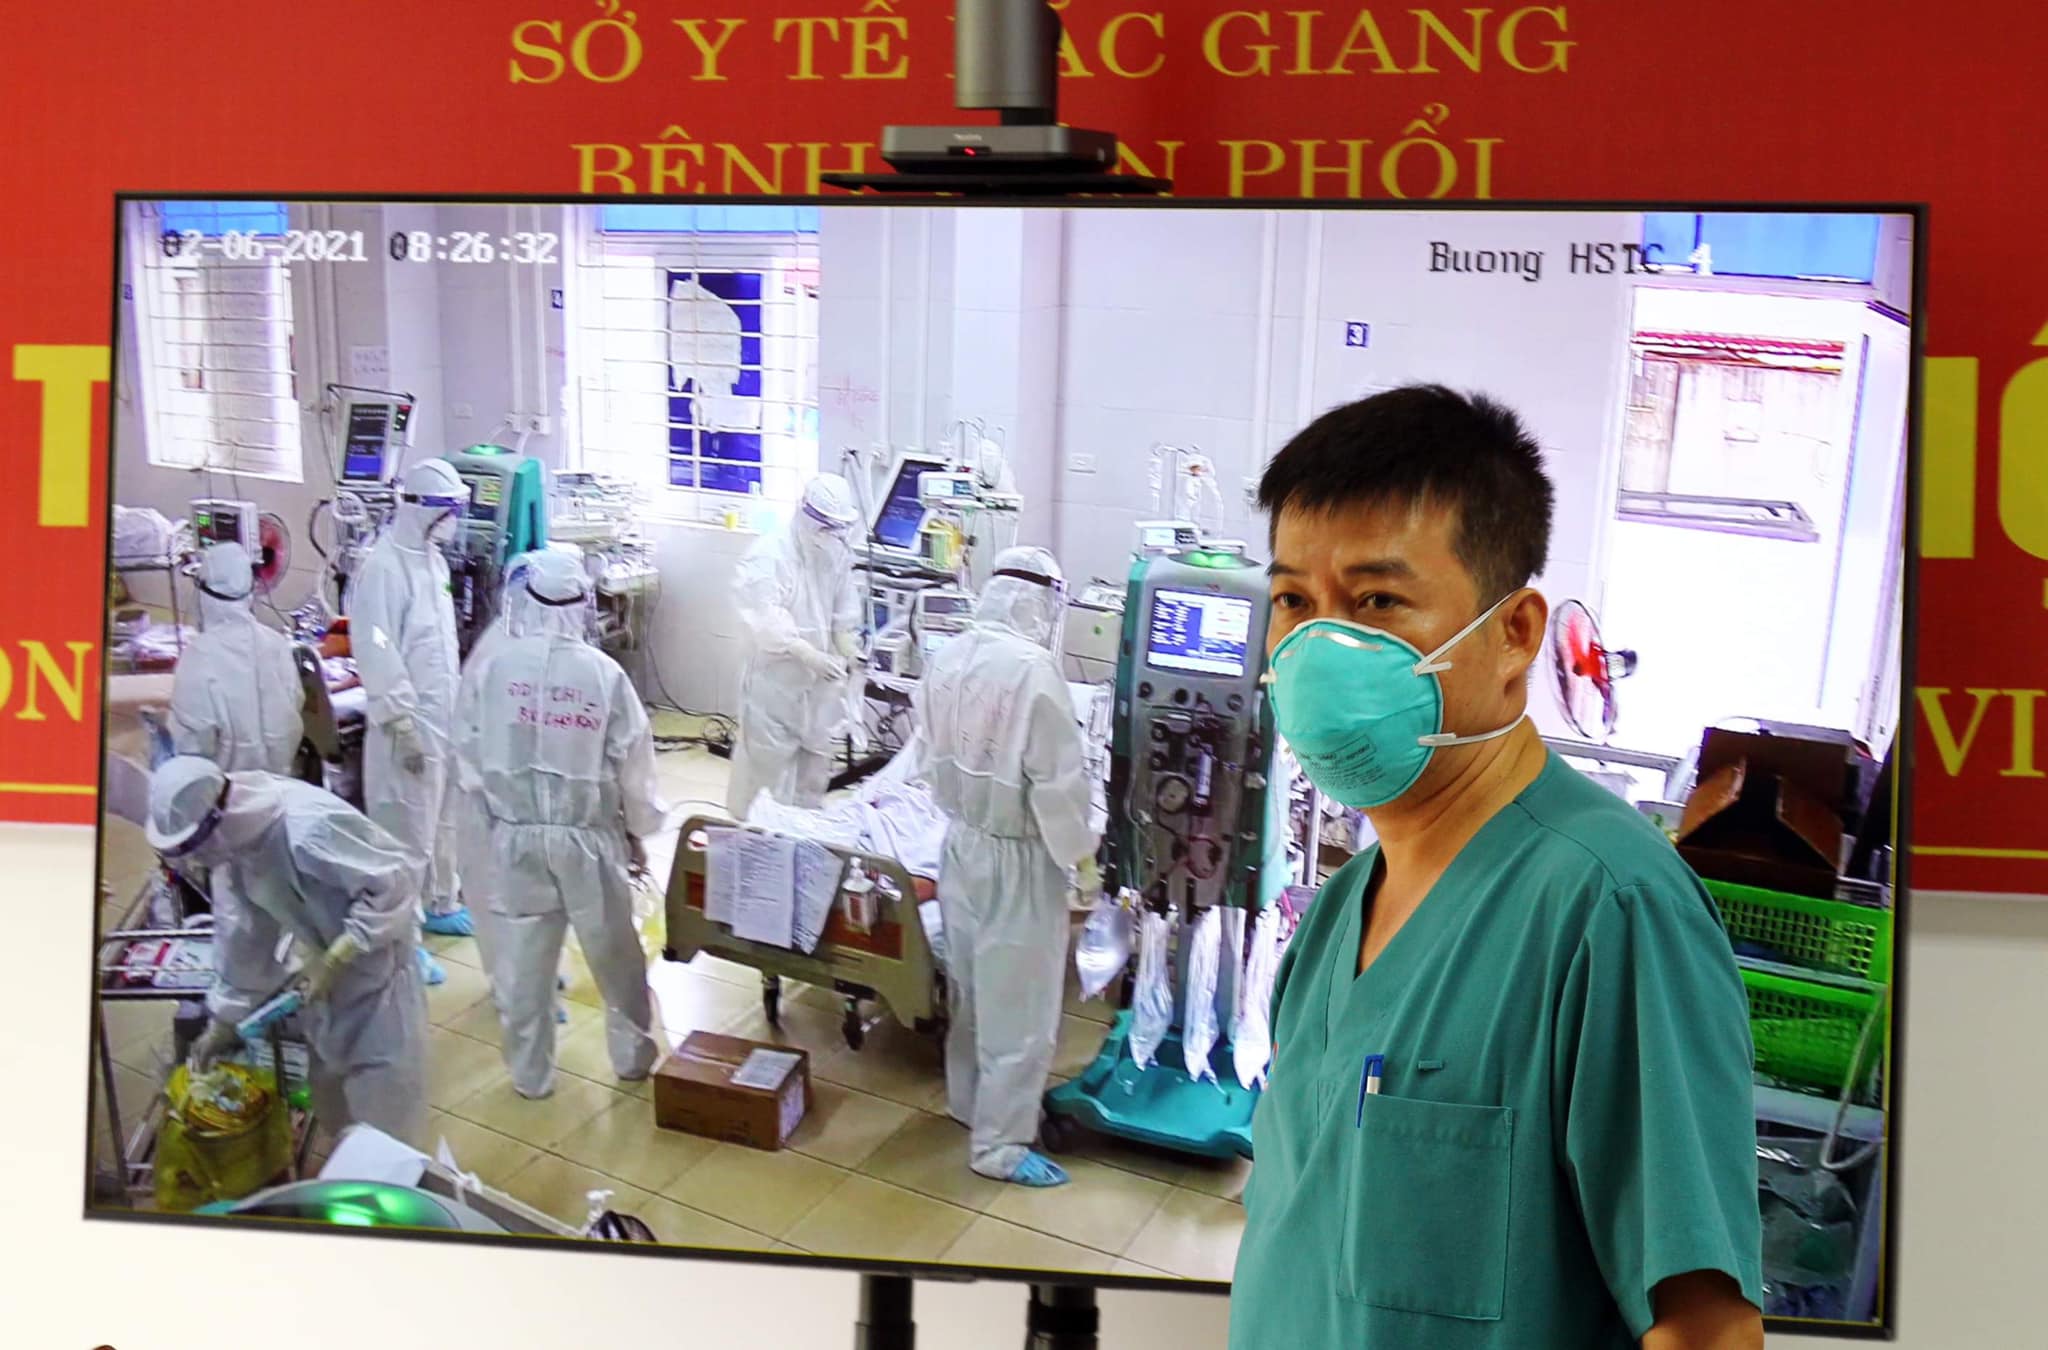 BSCKII Trần Thanh Linh, Phó trưởng Khoa Hồi sức cấp cứu BV Chợ Rẫy trao đổi về các ca bệnh nặng